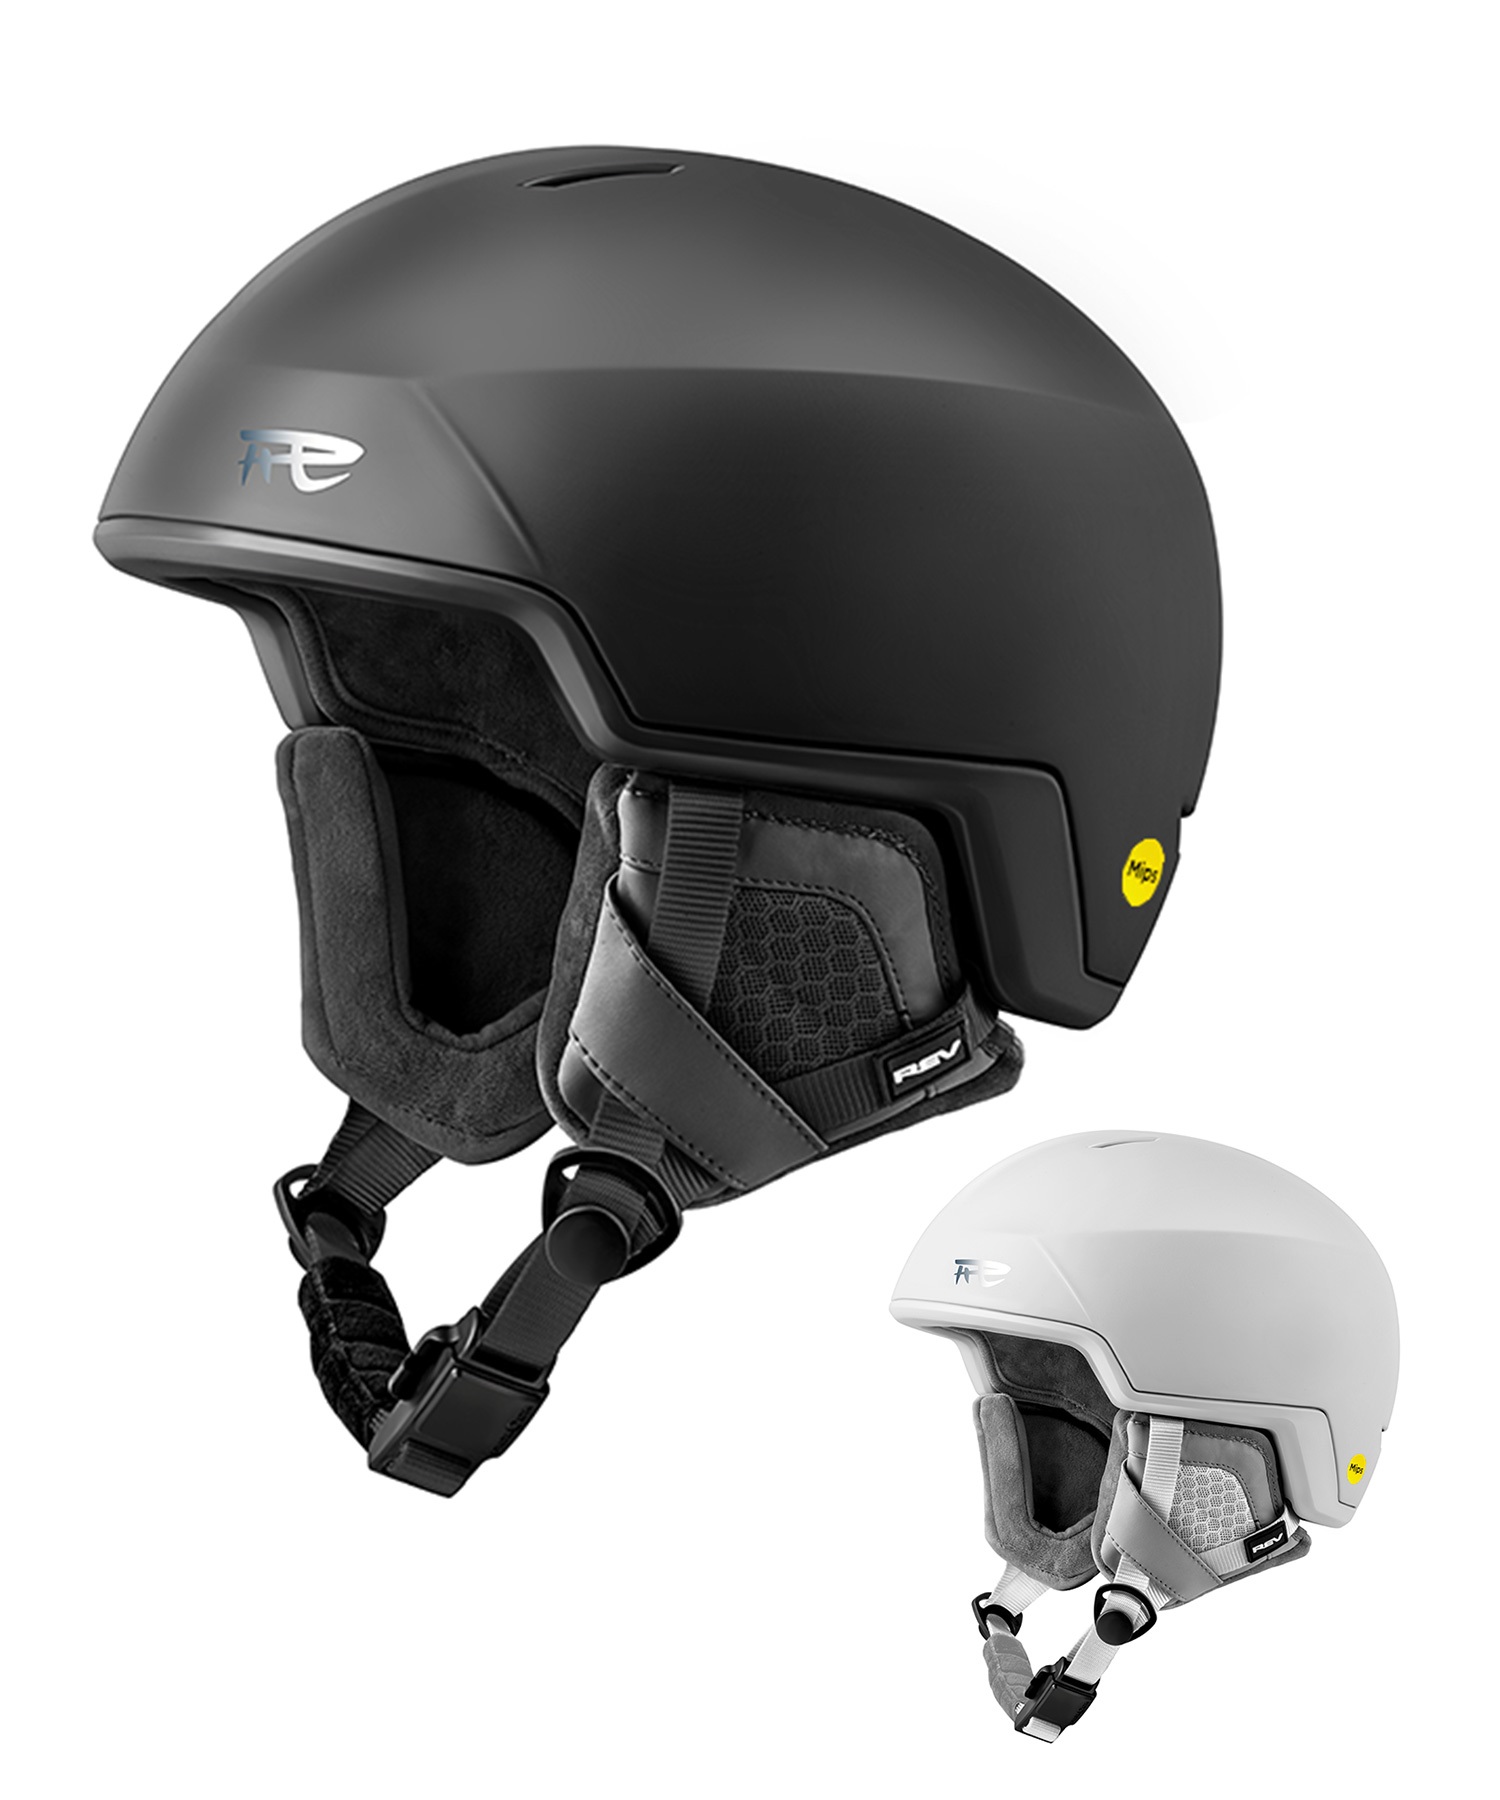 スノーボード ヘルメット ユニセックス REV レブ MIPS ミップス ZINAX ムラサキスポーツ 23-24モデル KK L15(BK-L)